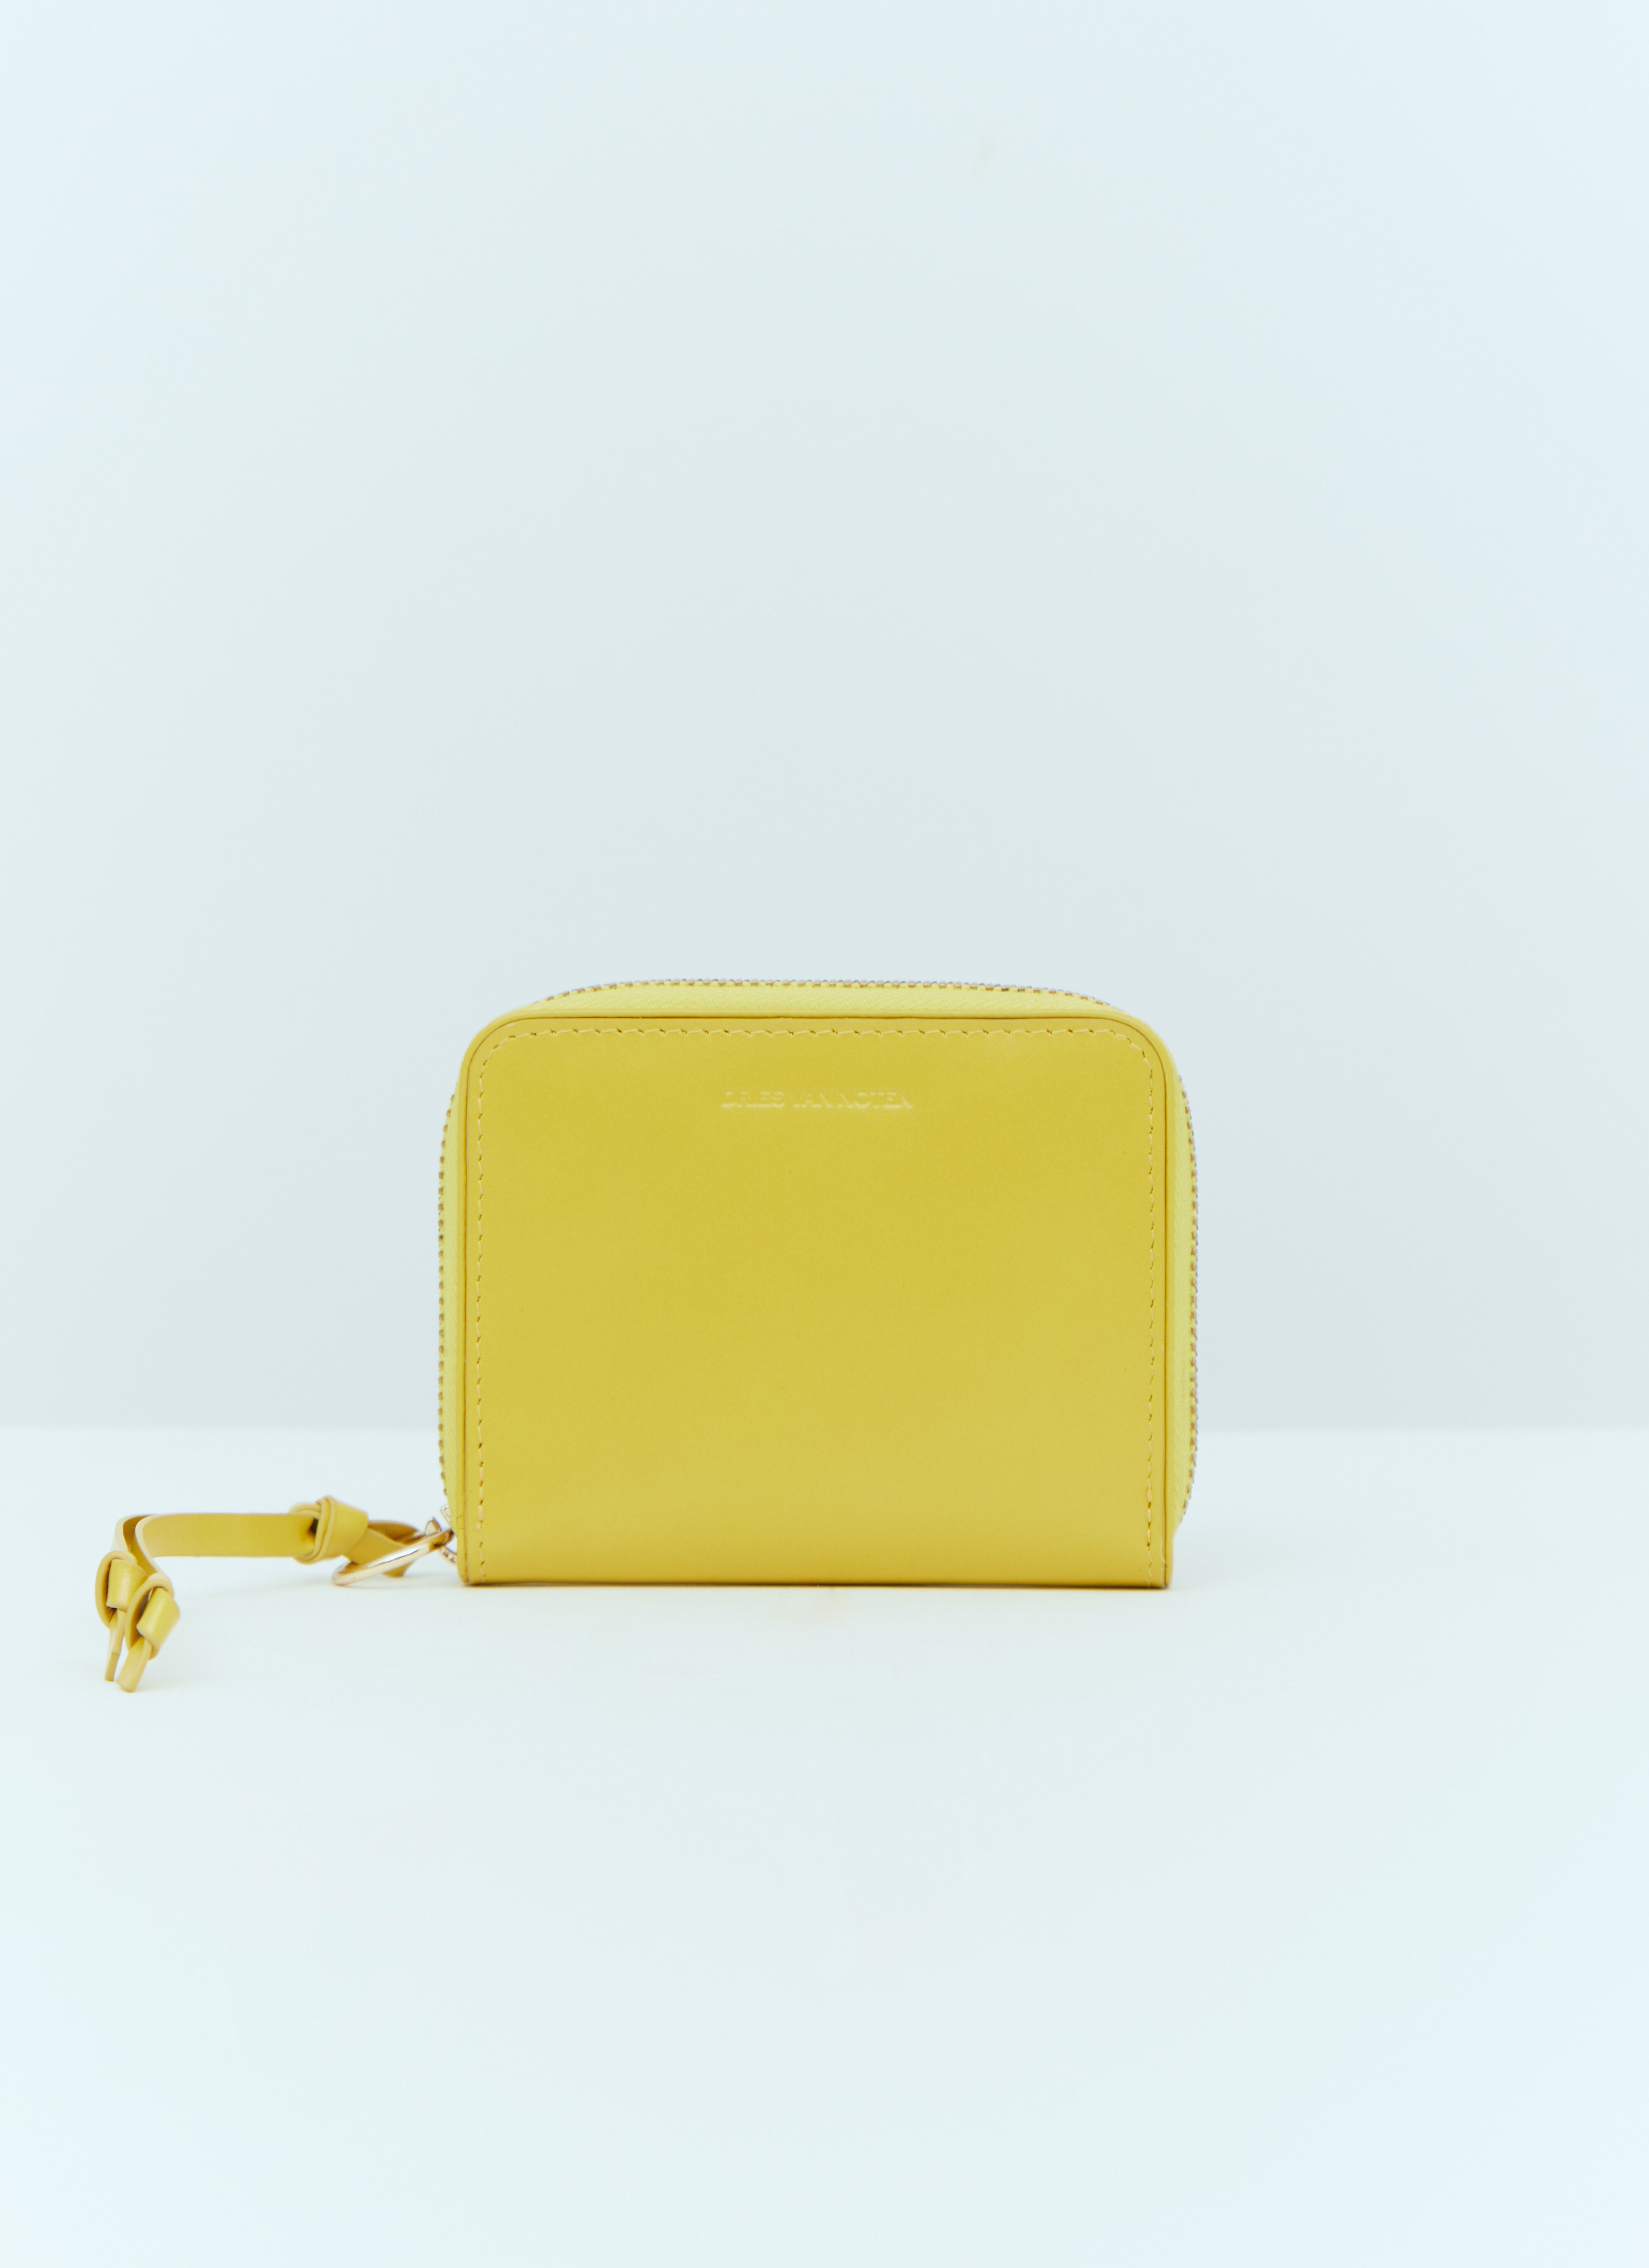 Dries Van Noten Zip Around Leather Wallet in Yellow | LN-CC®